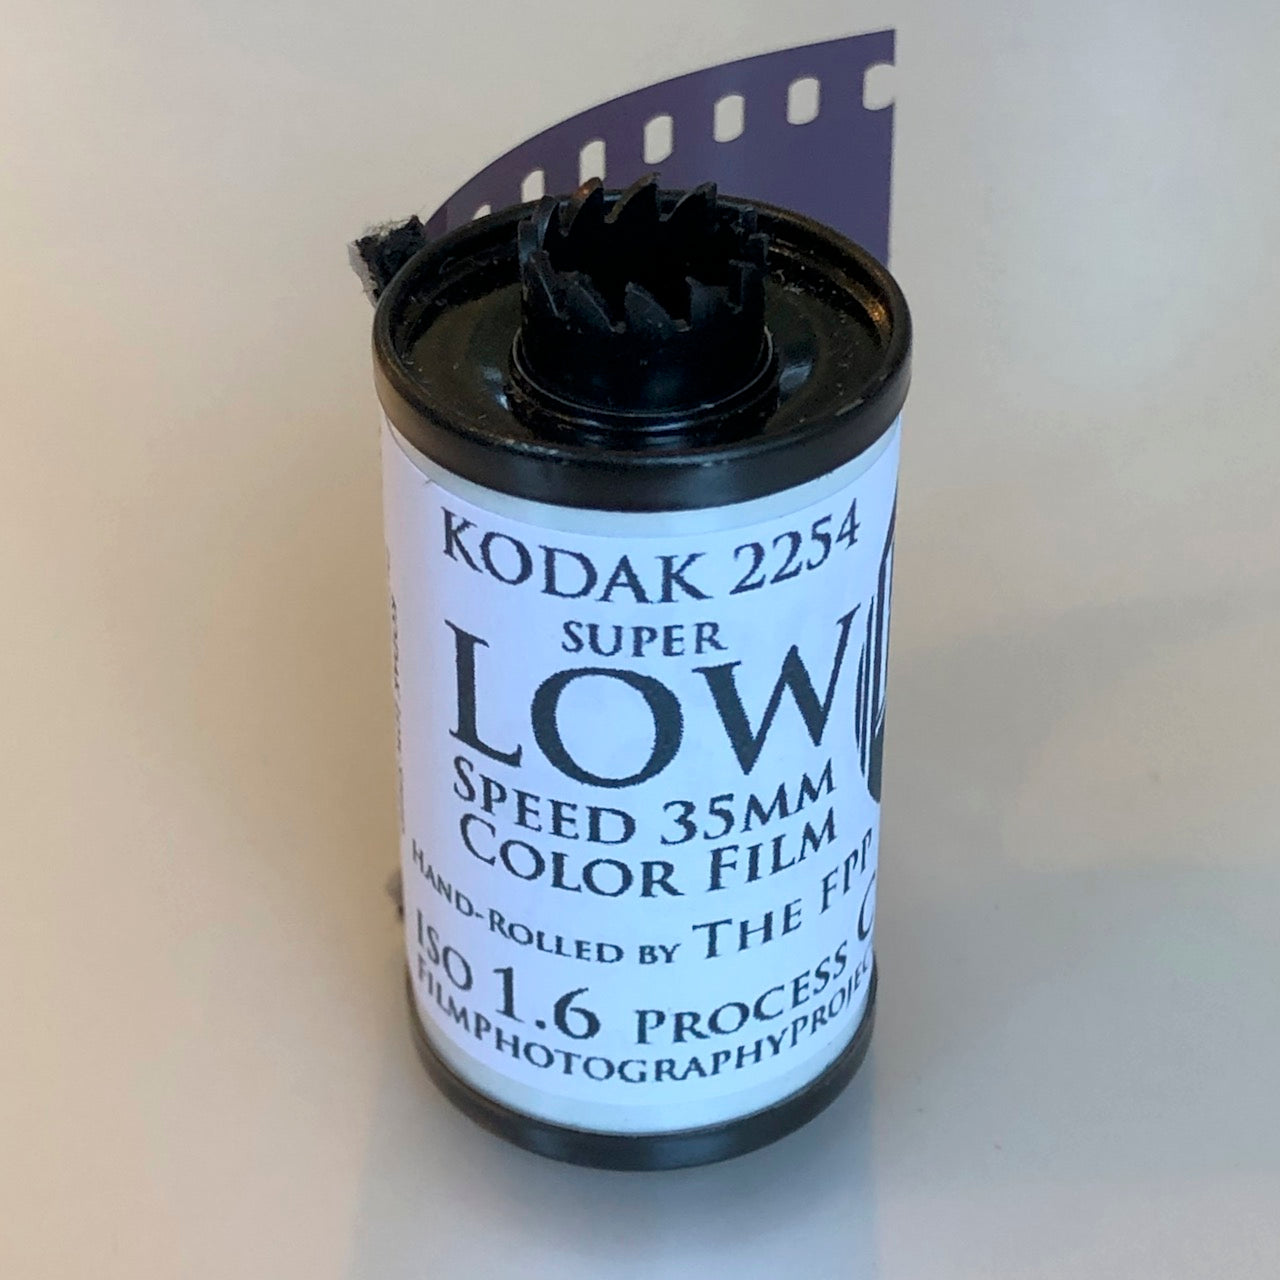 Kodak 2254 Super Low Speed Colour Film (EXPIRED)